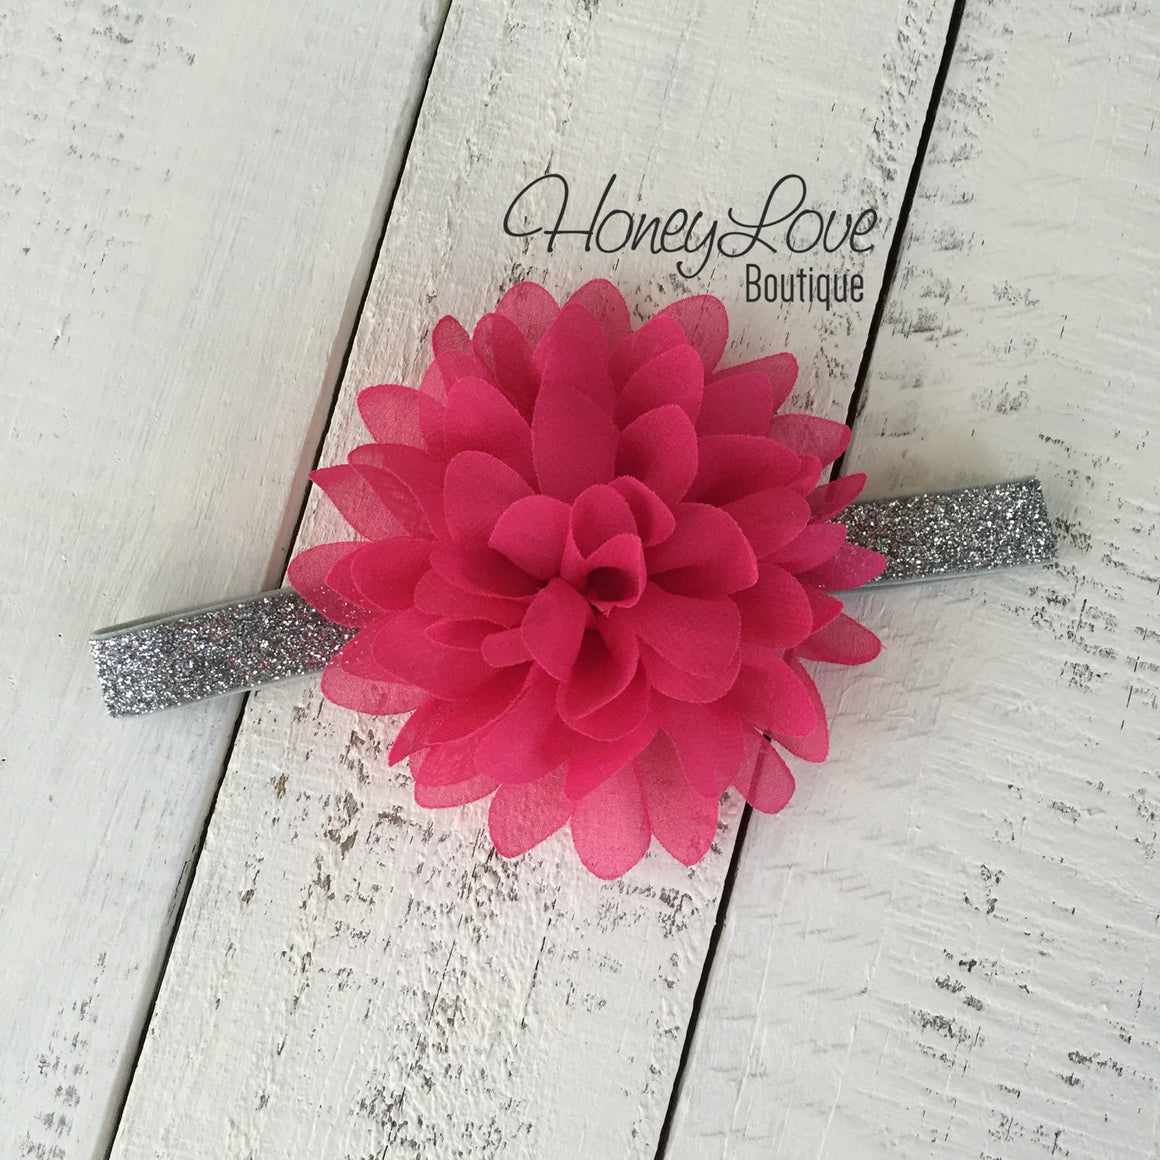 Watermelon Pink flower headband - HoneyLoveBoutique